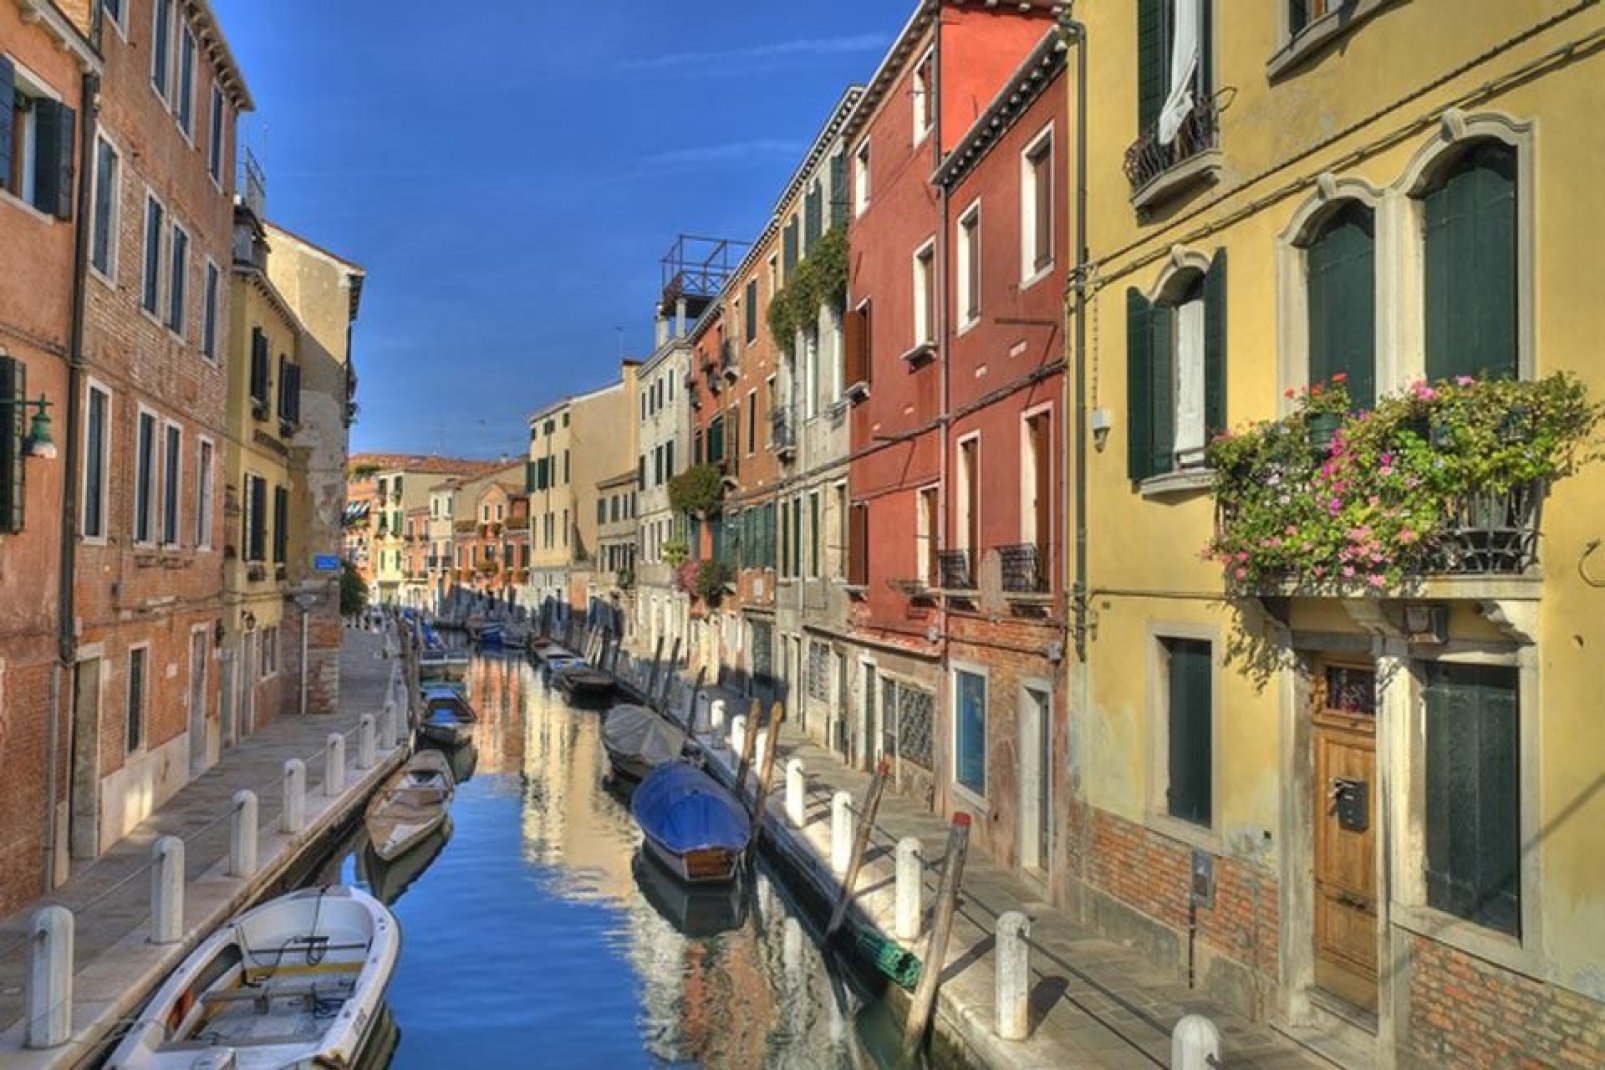 Das Zentrum von Venedig umfasst 118 Inseln, die über 354 Brücken verbunden und durch 177 Kanäle getrennt sind. Letztere dienen den Einwohnern seit jeher als Verkehrswege.